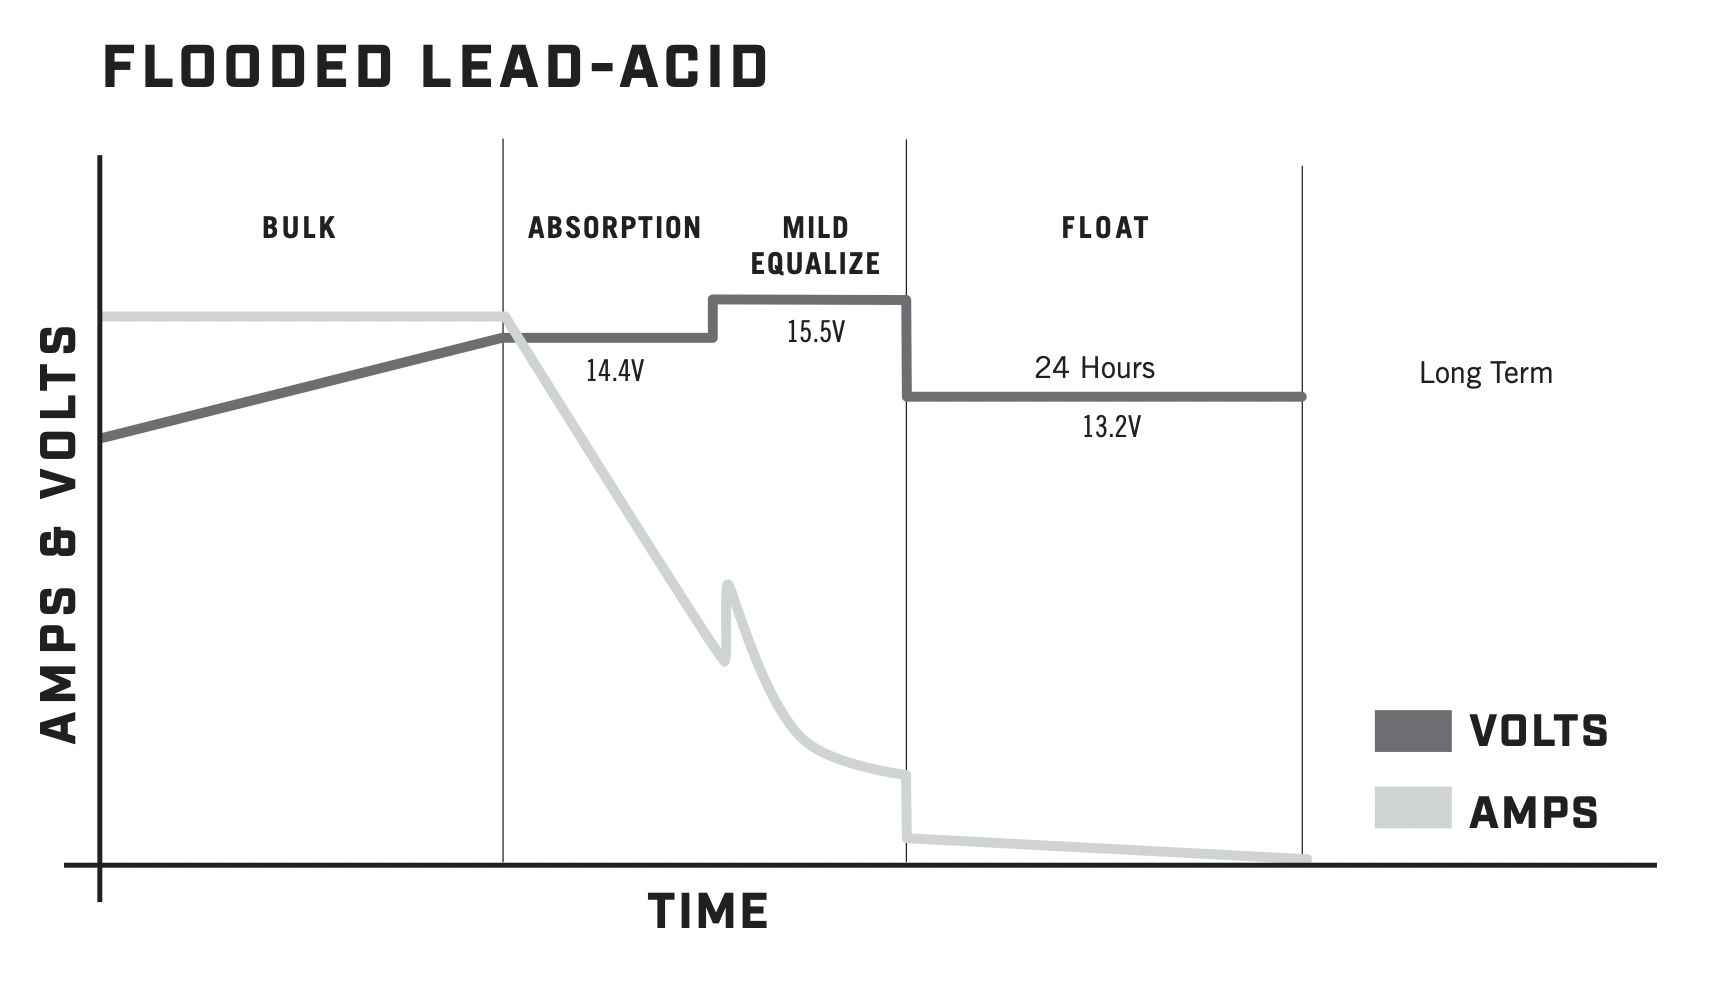 Flooded lead-acid charging profile